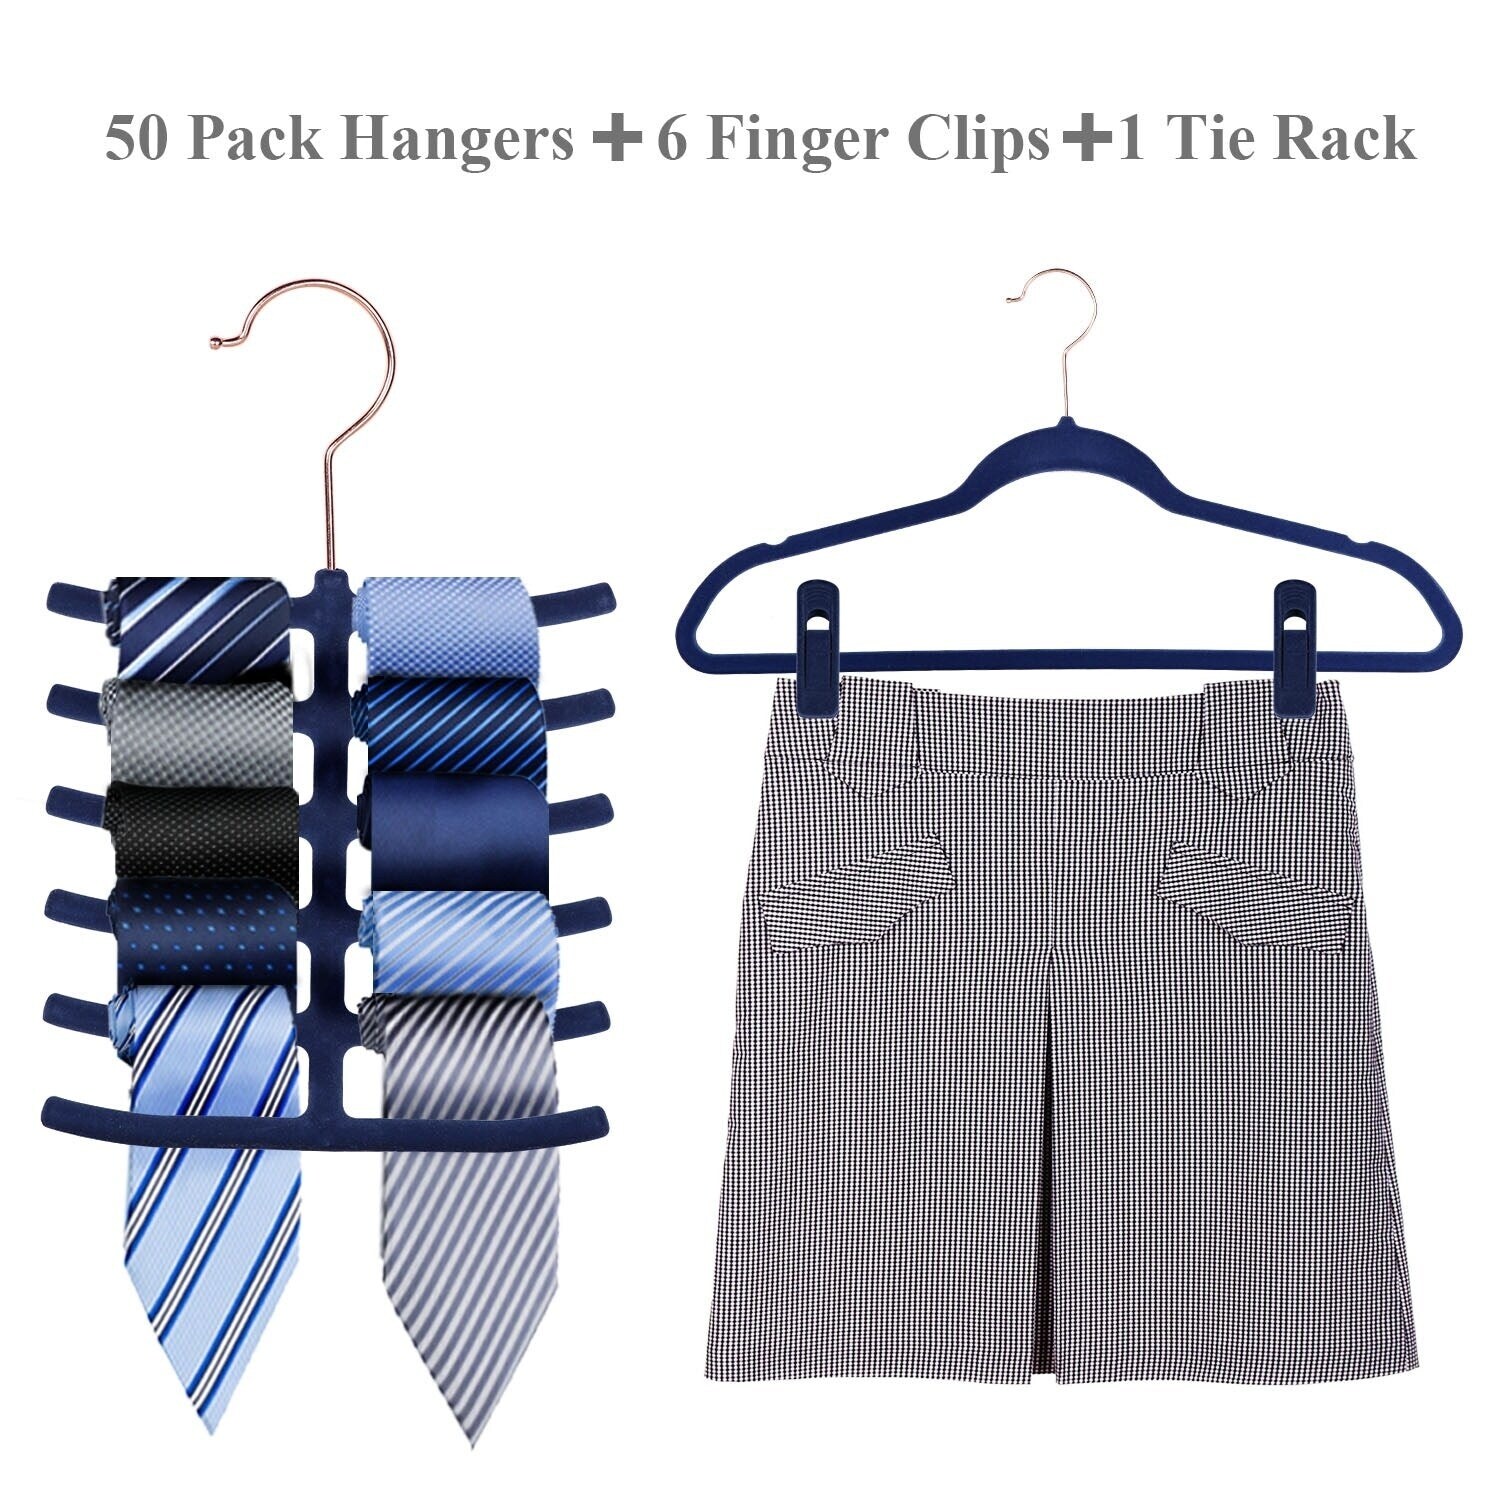 Plastic and Velvet Non-Slip Hangers (25-Pack) - On Sale - Bed Bath & Beyond  - 36530706